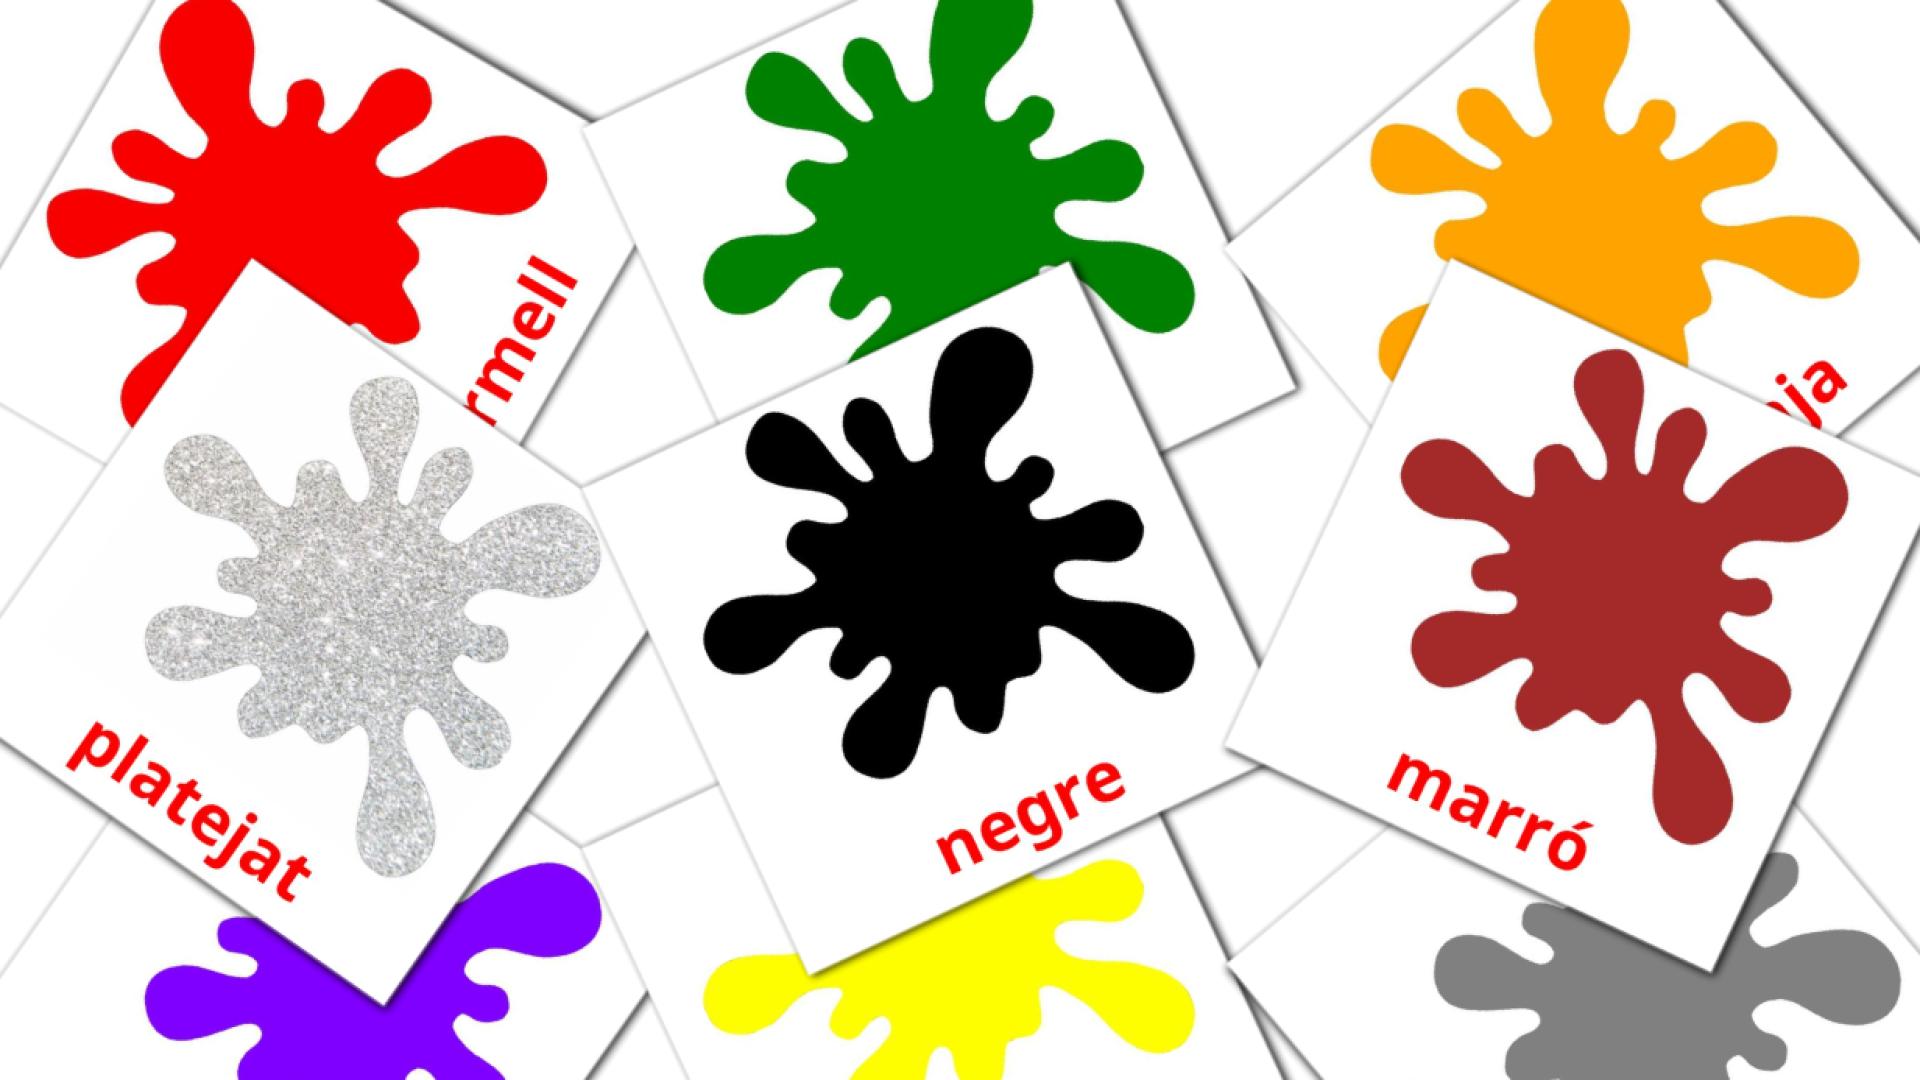 Colors catalaans woordenschat flashcards